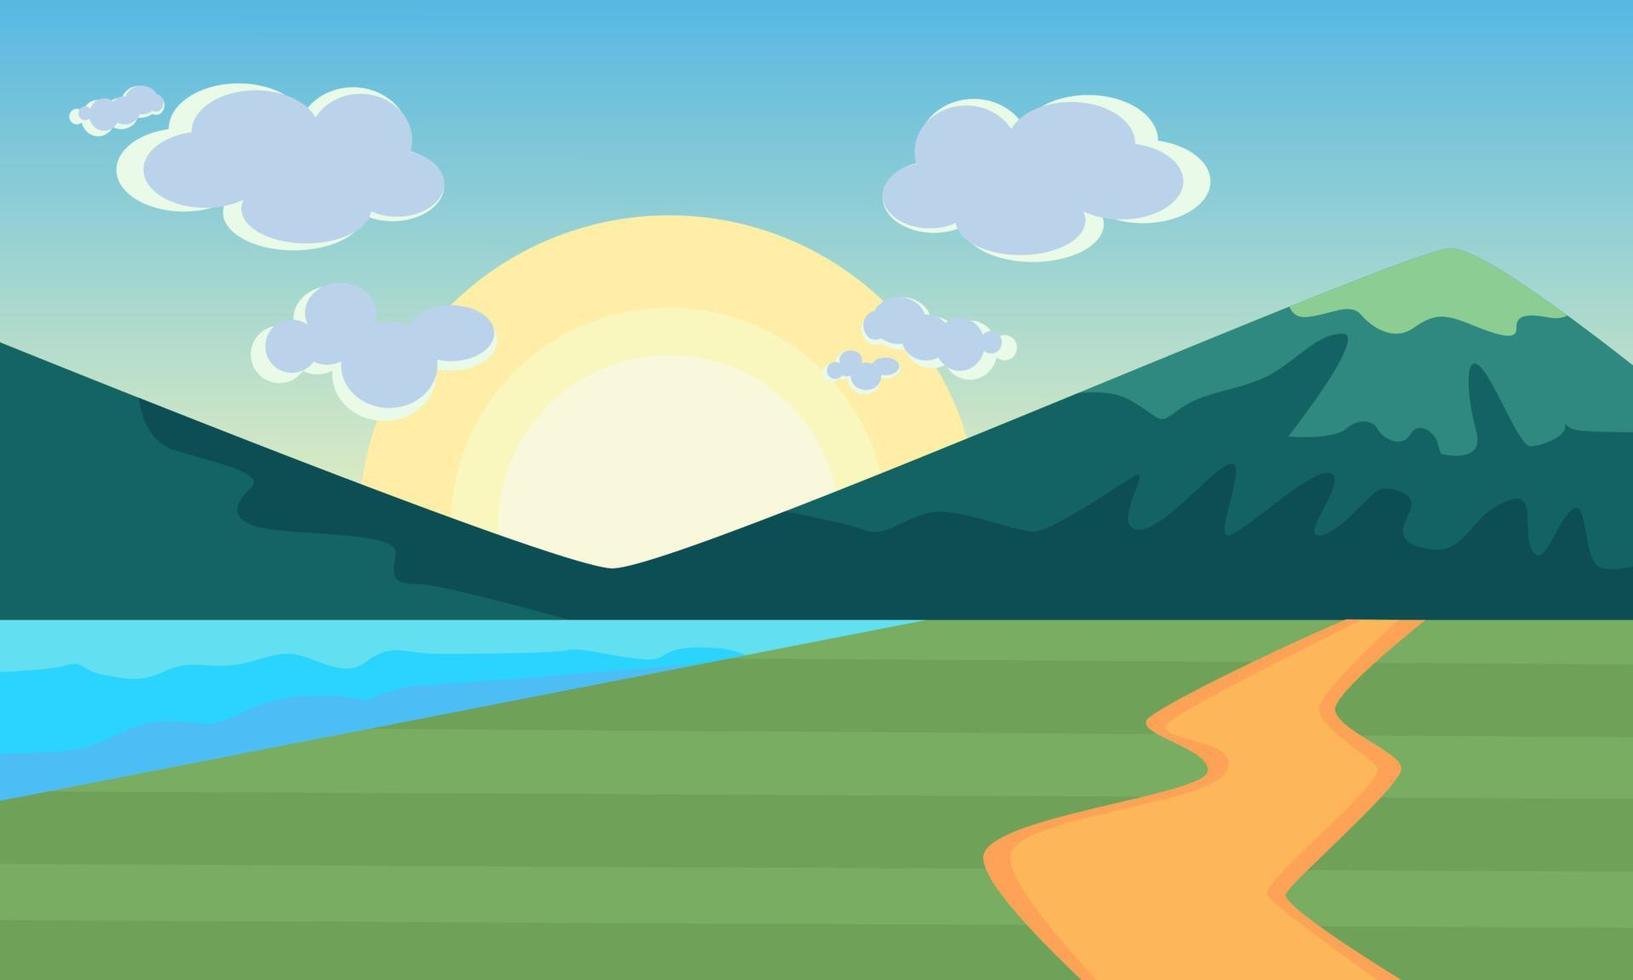 ilustrações de natureza, sol, lago, montanhas e caminhos. fundo simples sobre a natureza. adequado para uso como plano de fundo para gadgets e vários outros fins de design. vetor